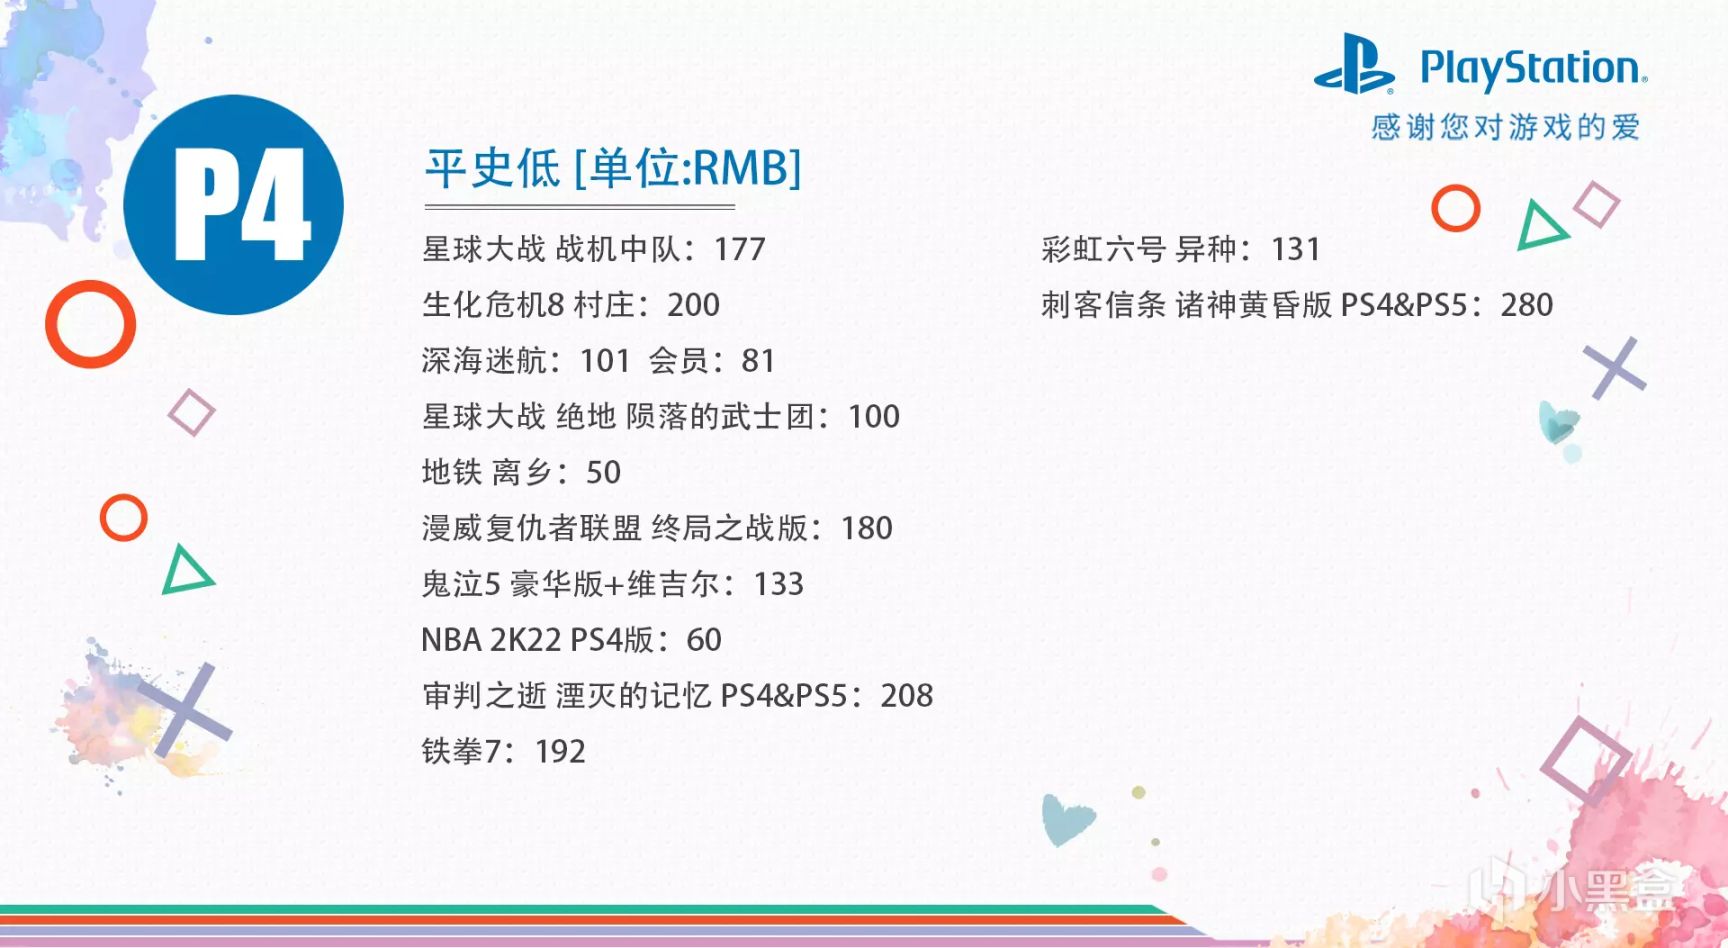 【折扣】港服PS4/PS5平台7月优惠低至2折，10款史低中文游戏推荐-第4张